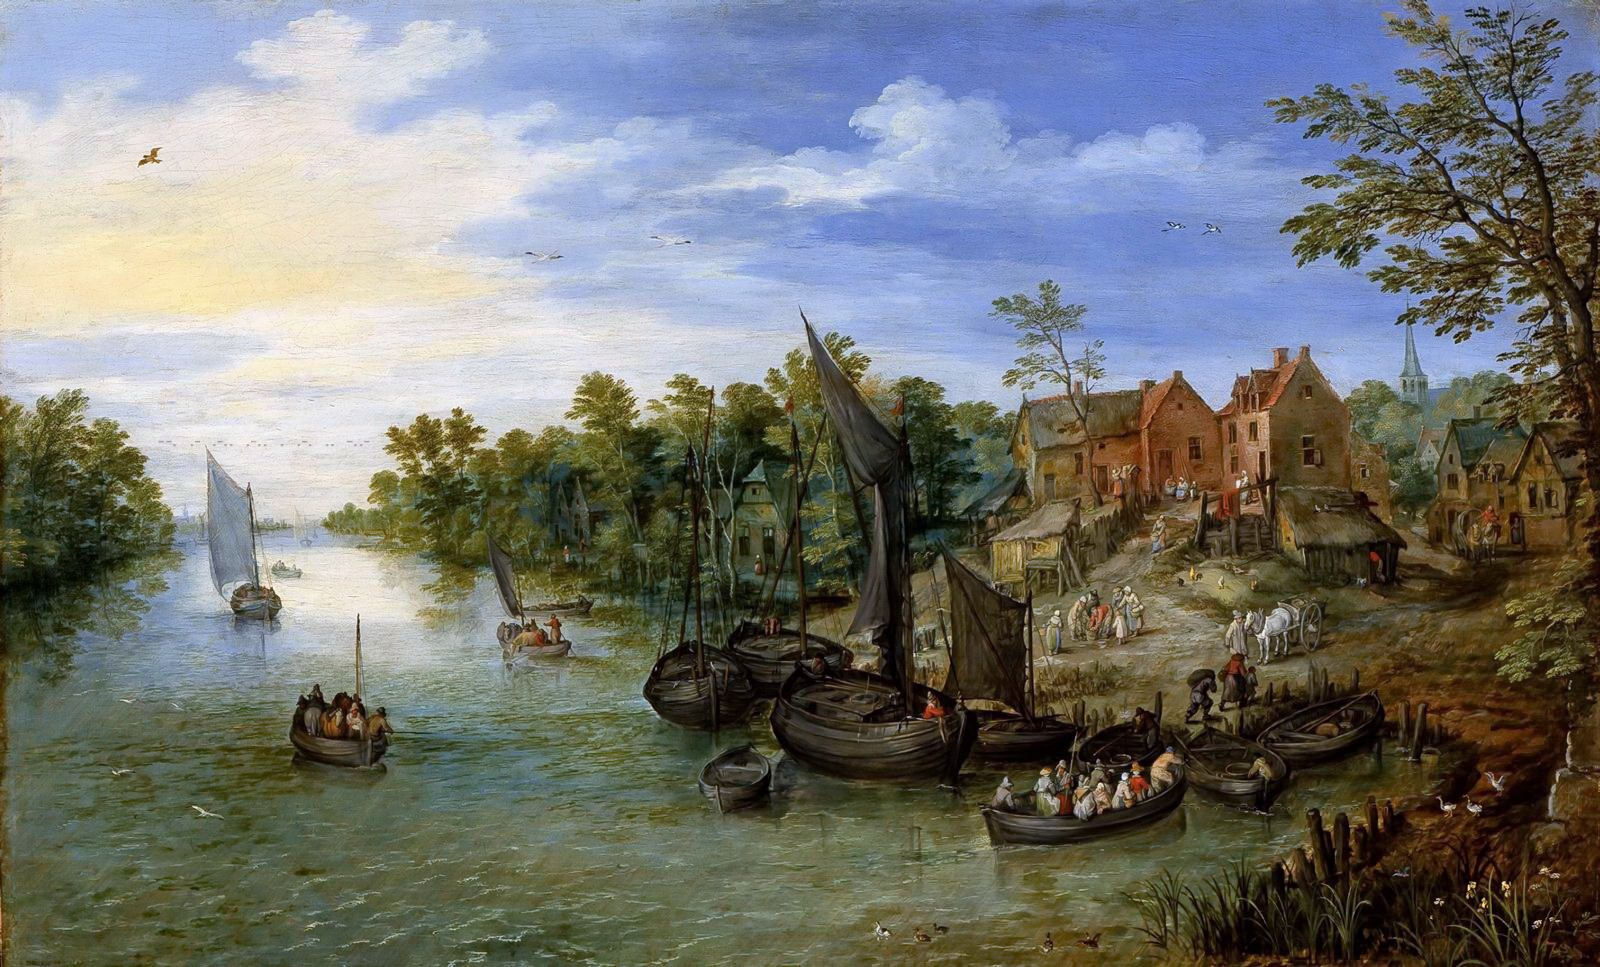 Ян Брейгель Старший. "Пейзаж с деревней у реки". 1612. Музей искусств, Индианополис.